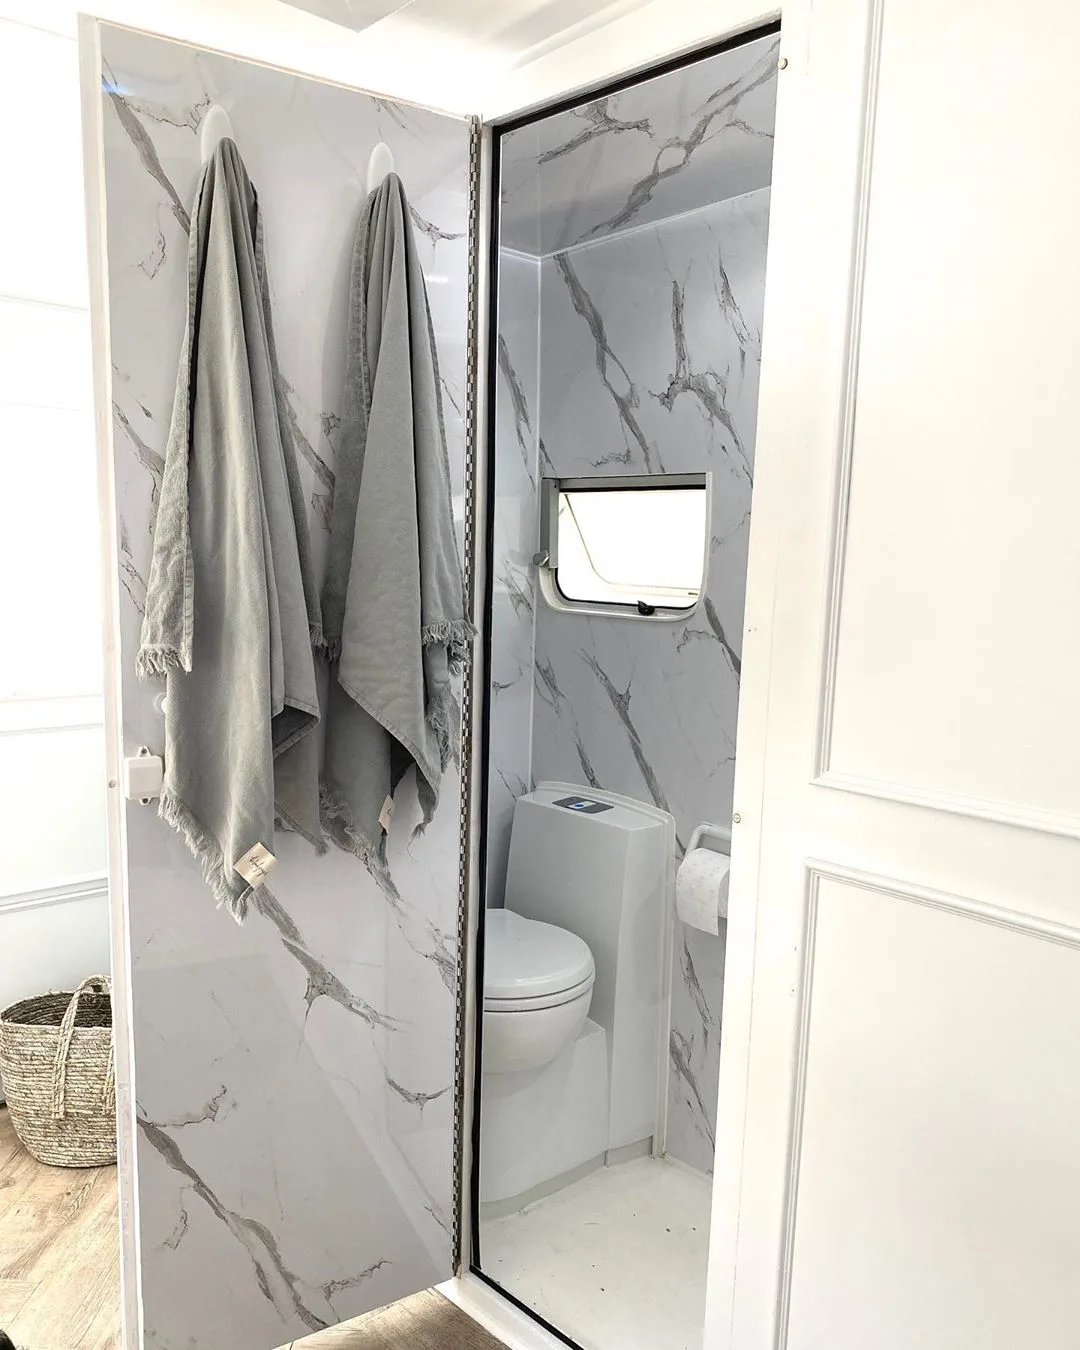 White and grey caravan bathroom interior